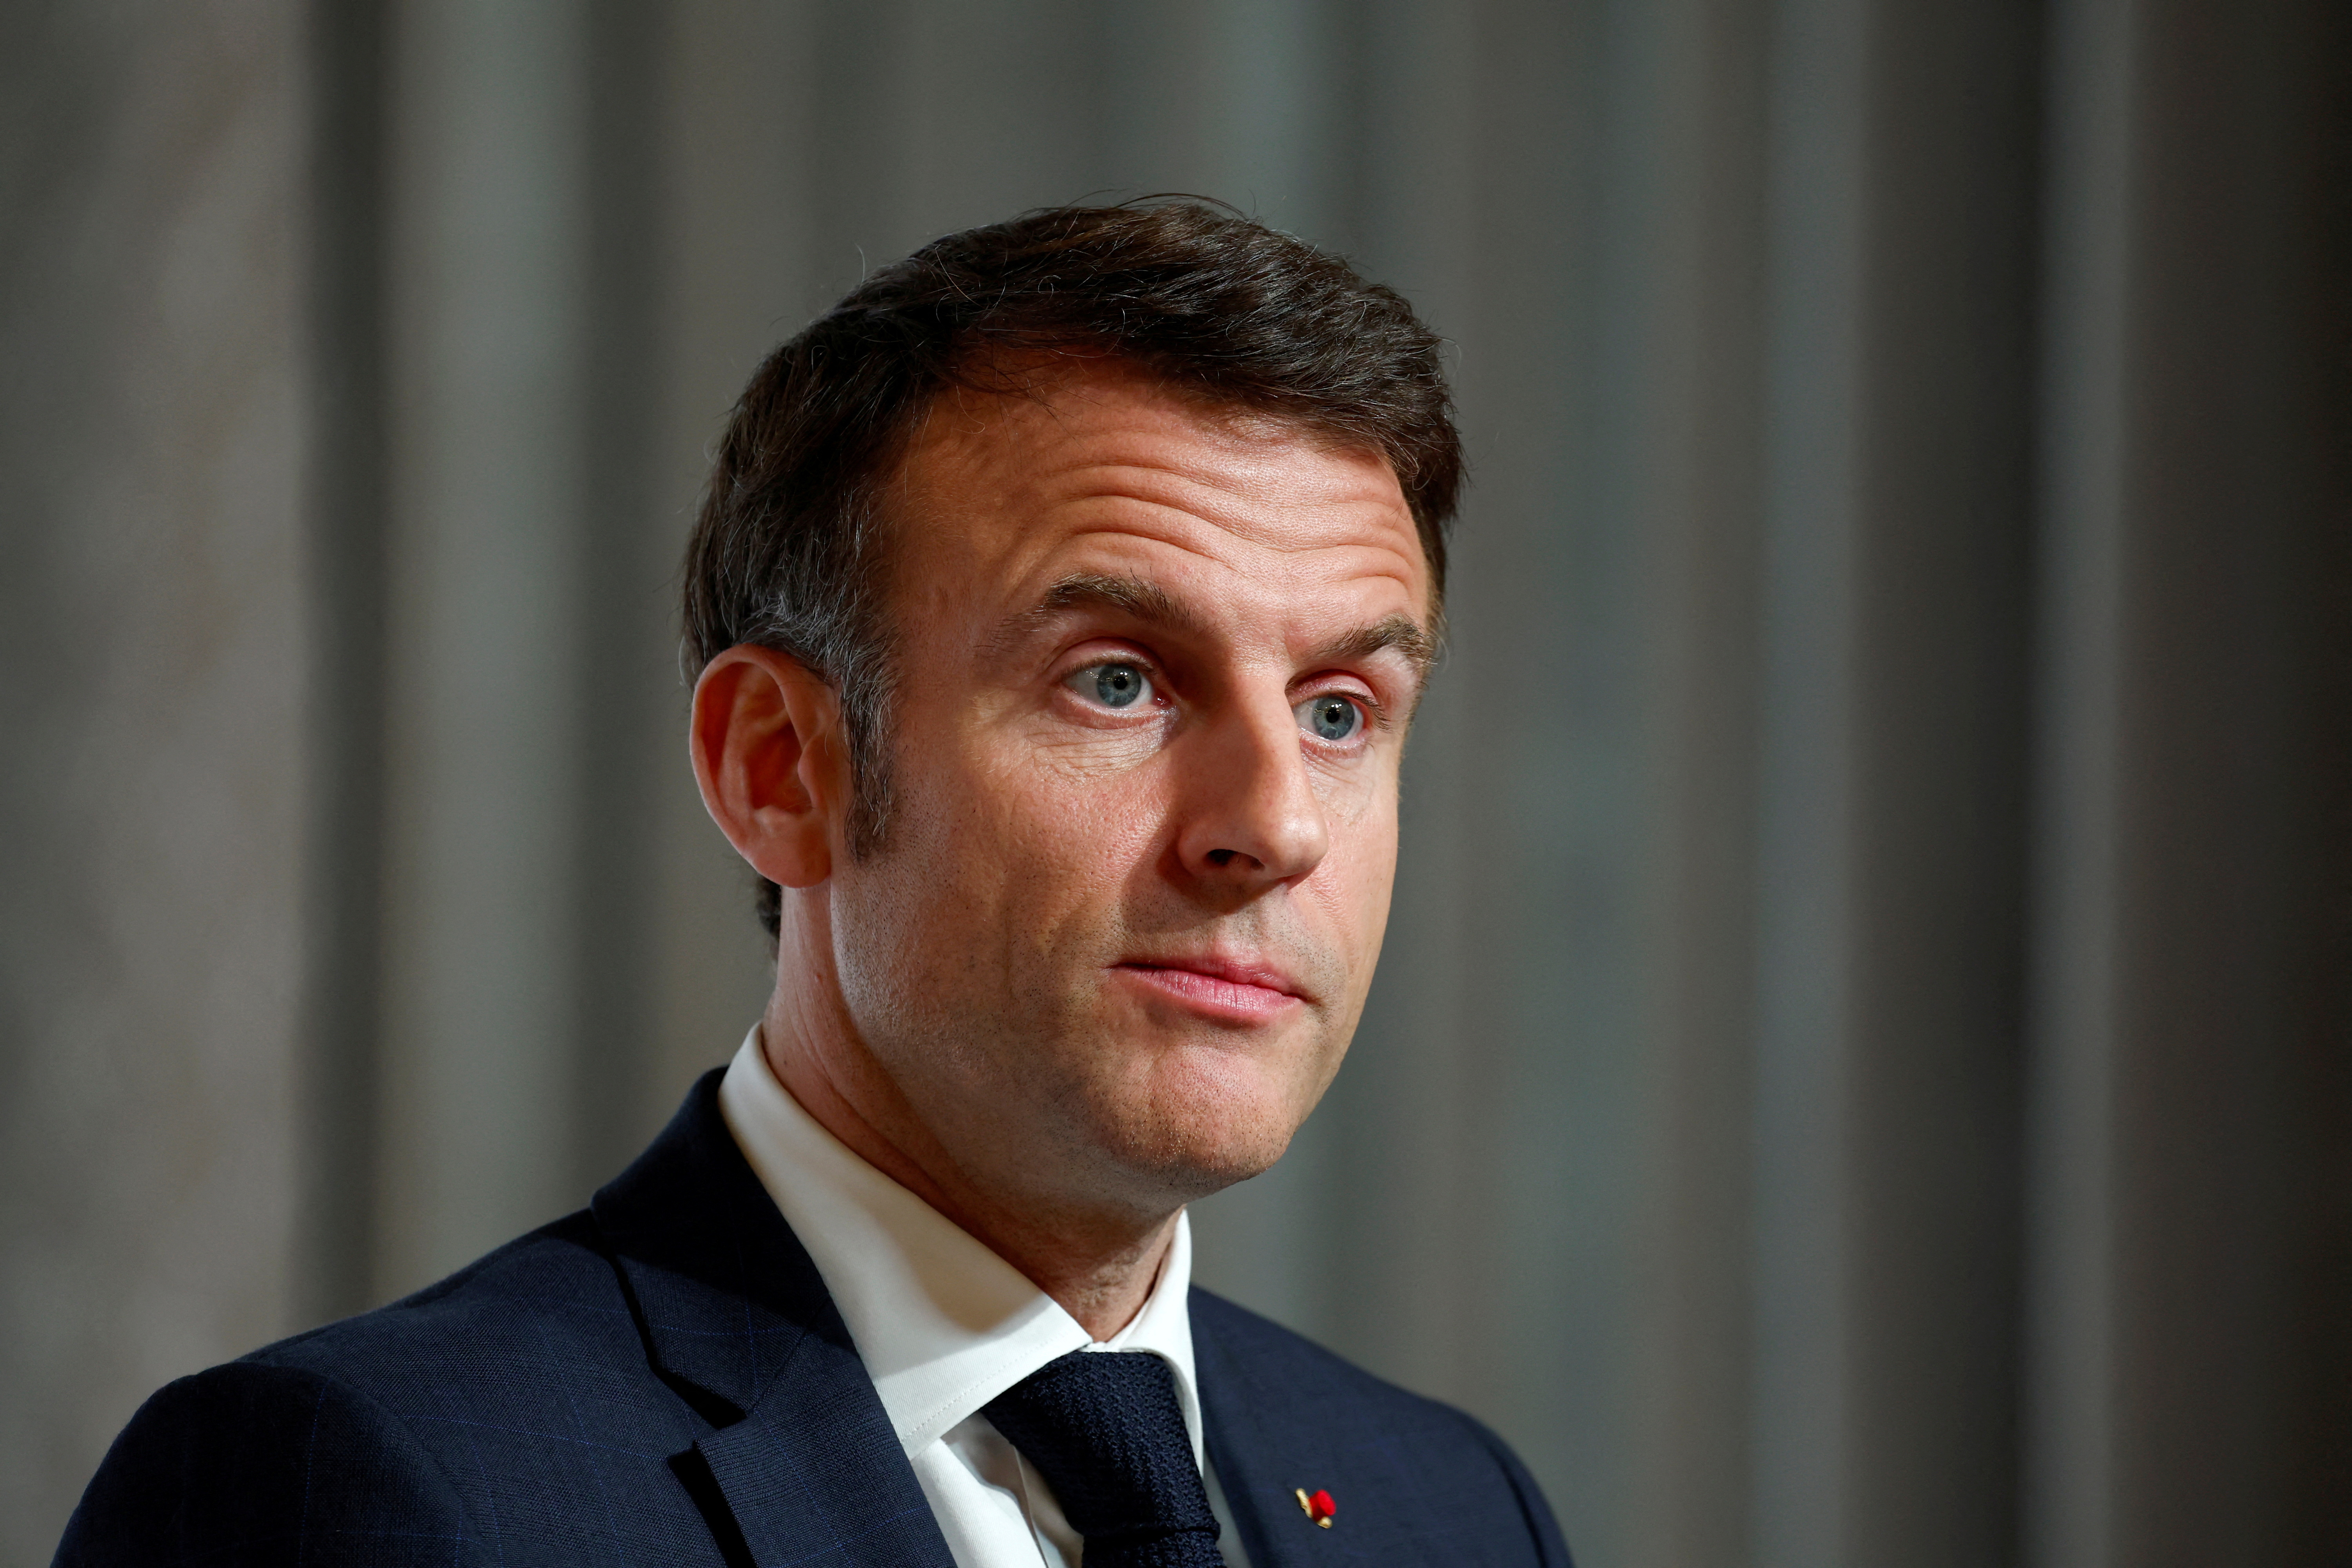 French President Macron hosts Ukraine summit in Paris